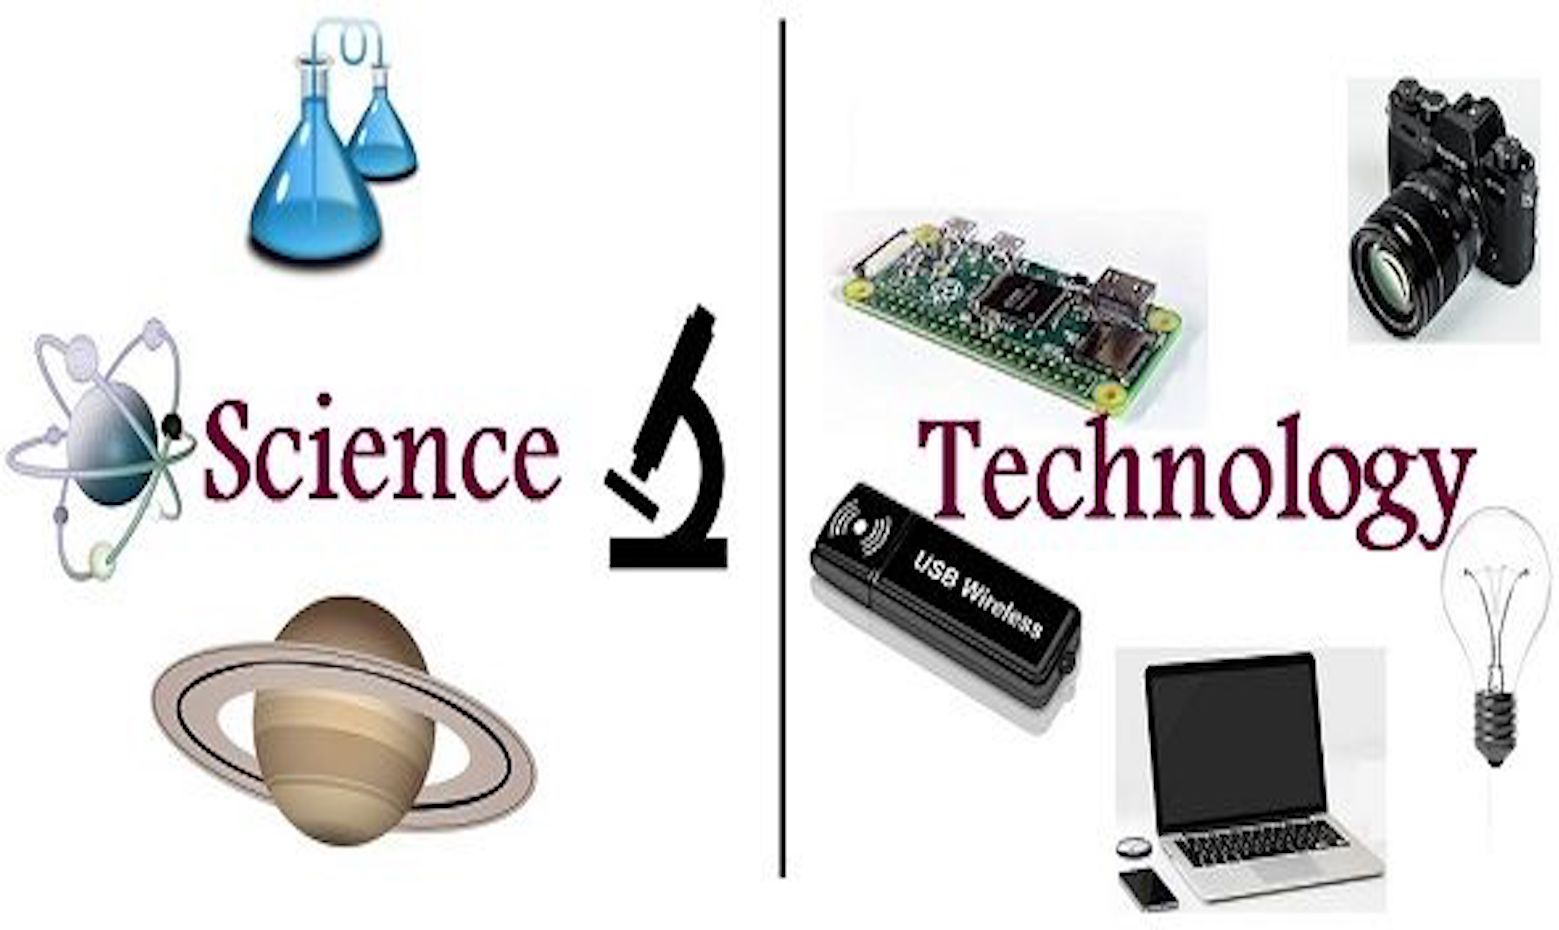 Khoa học và công nghệ là gì? Quyền đối với khoa học và công nghệ?